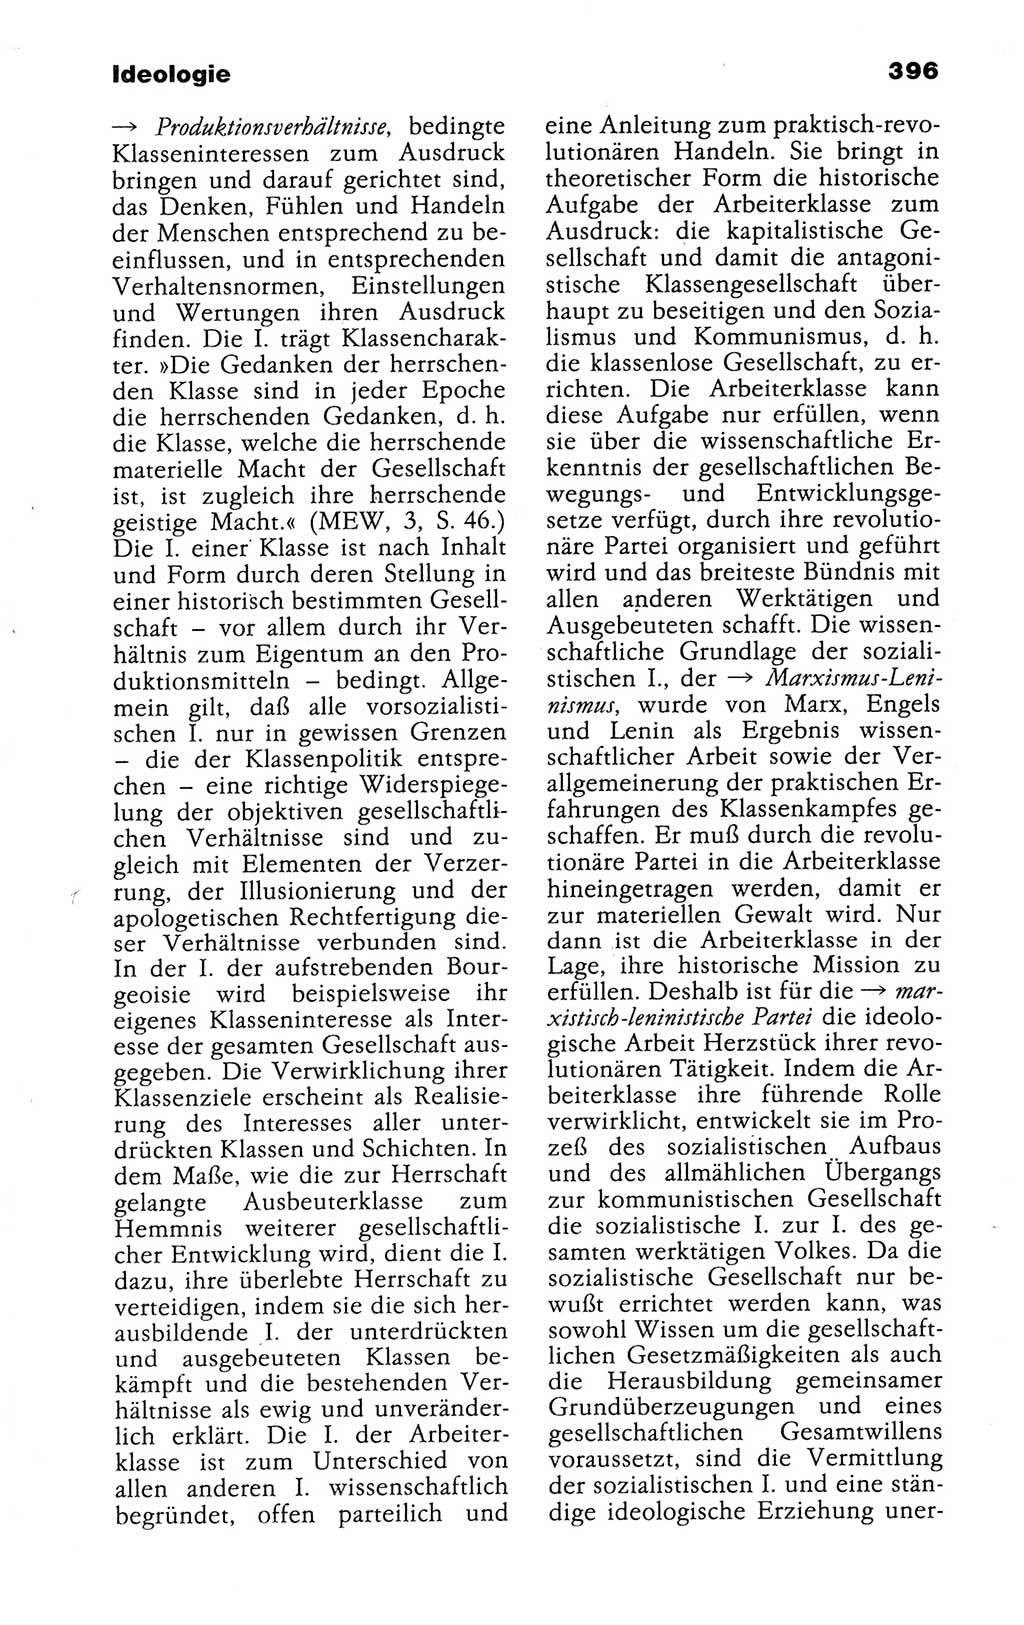 Kleines politisches Wörterbuch [Deutsche Demokratische Republik (DDR)] 1988, Seite 396 (Kl. pol. Wb. DDR 1988, S. 396)